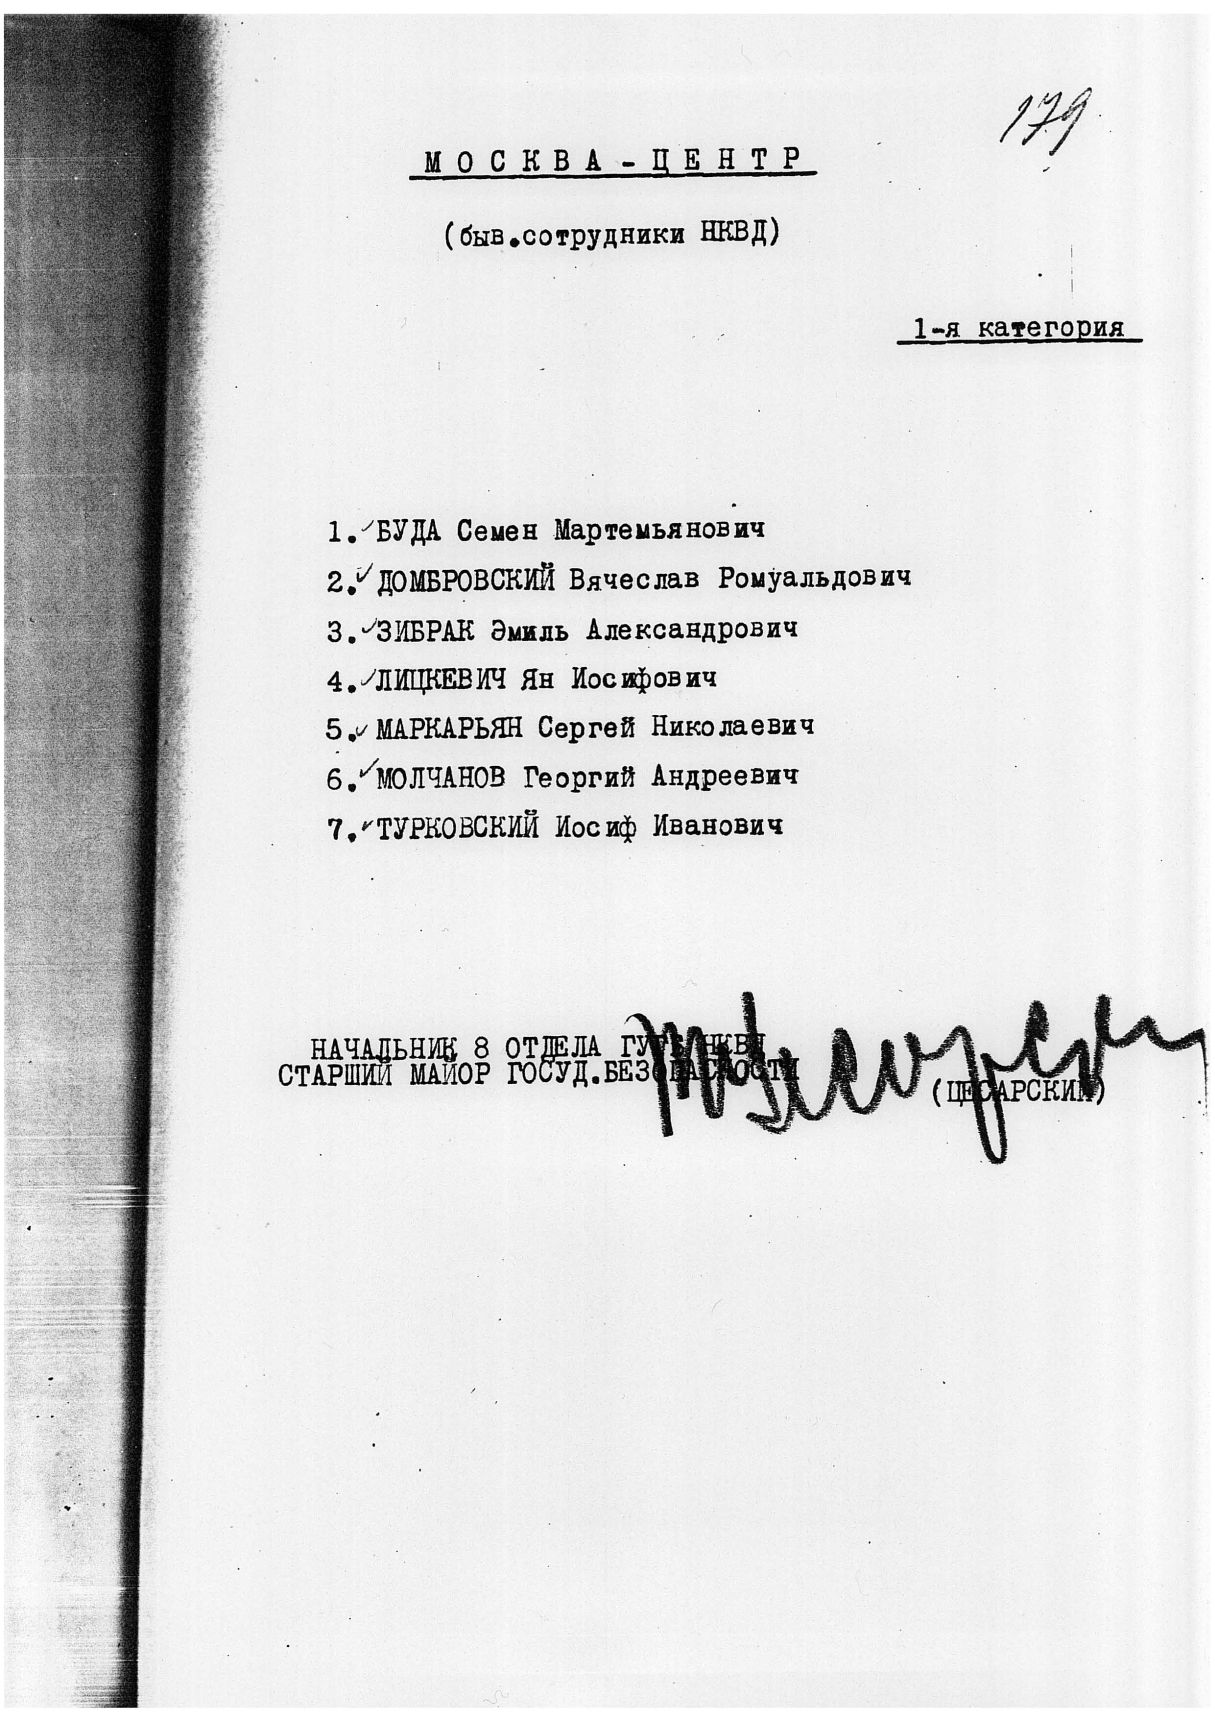 Сталинский расстрельный список в ОП от 3.10.1937 г.